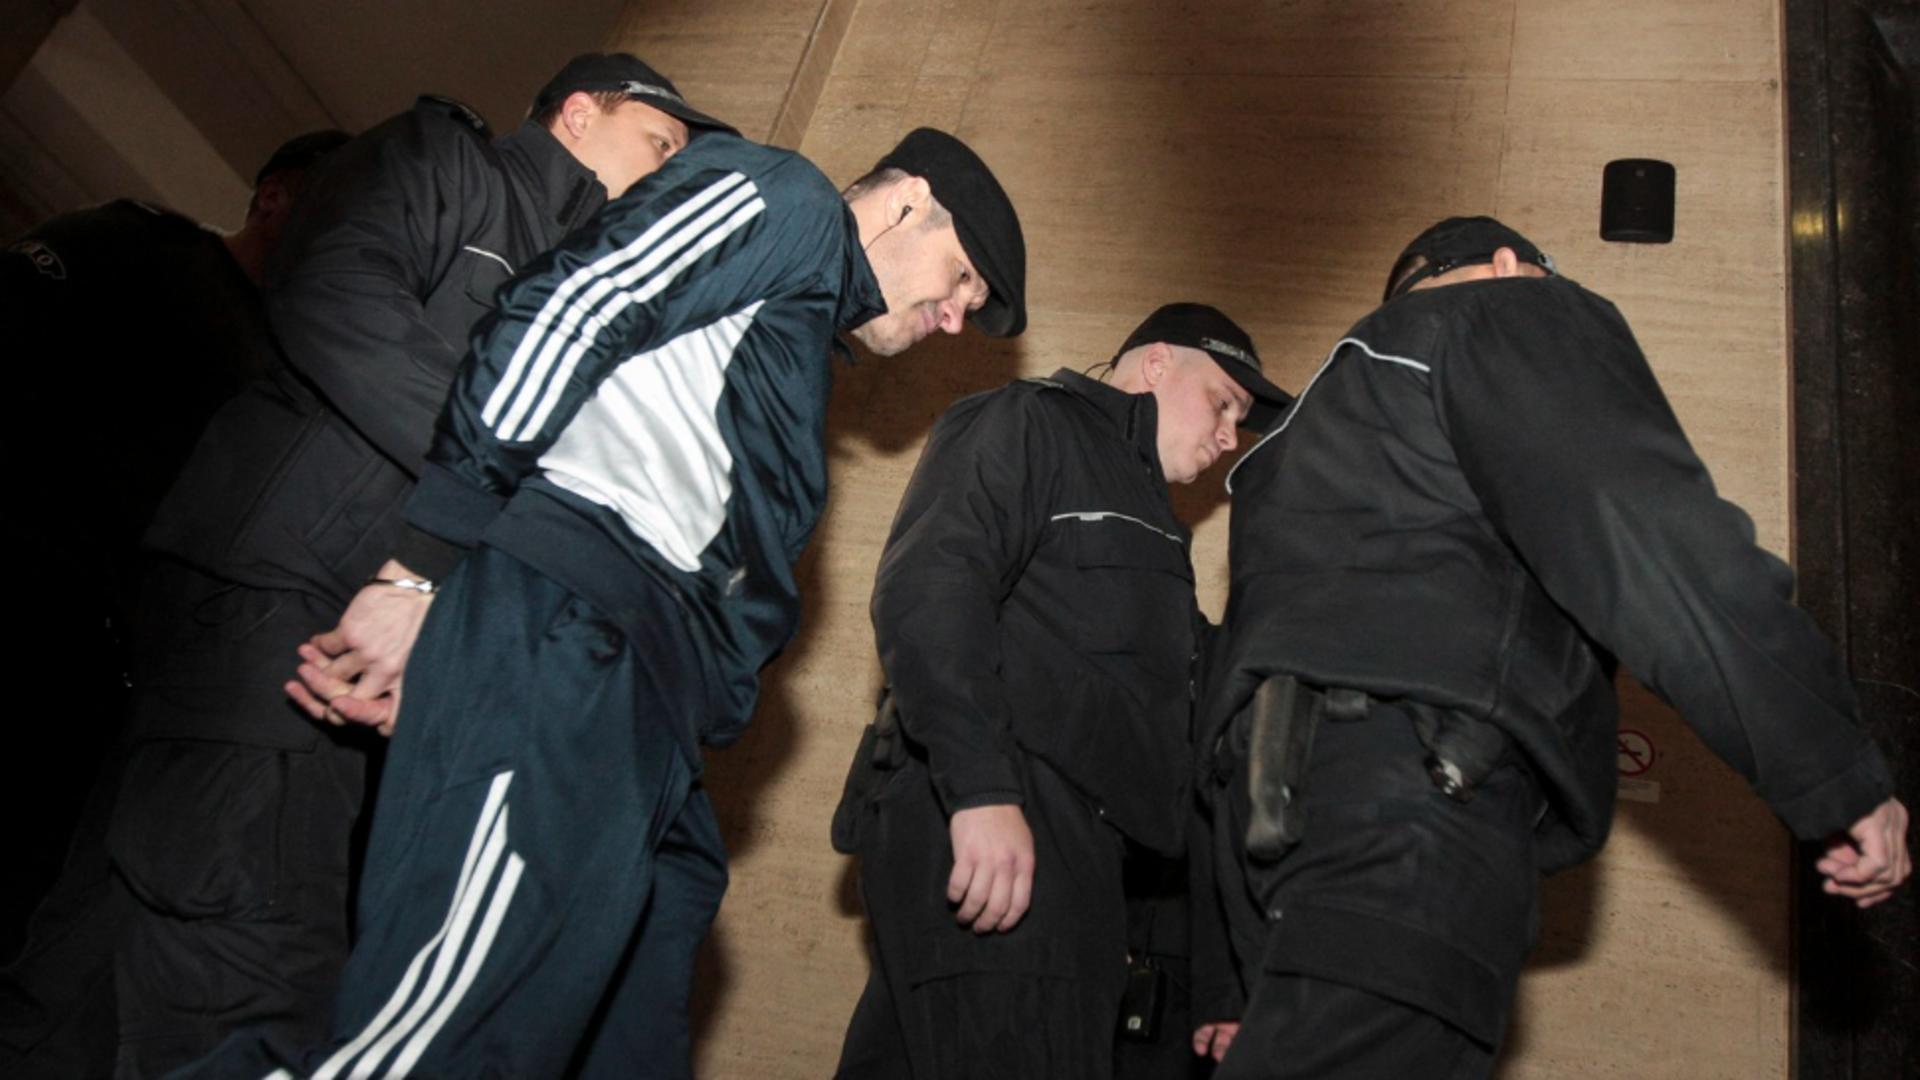 Un temut traficant de droguri bulgar s-a predat poliţiei. Bărbatul a fost condamnat și în România la peste 10 ani de închisoare/ Arhivă foto Profimedia, 2013